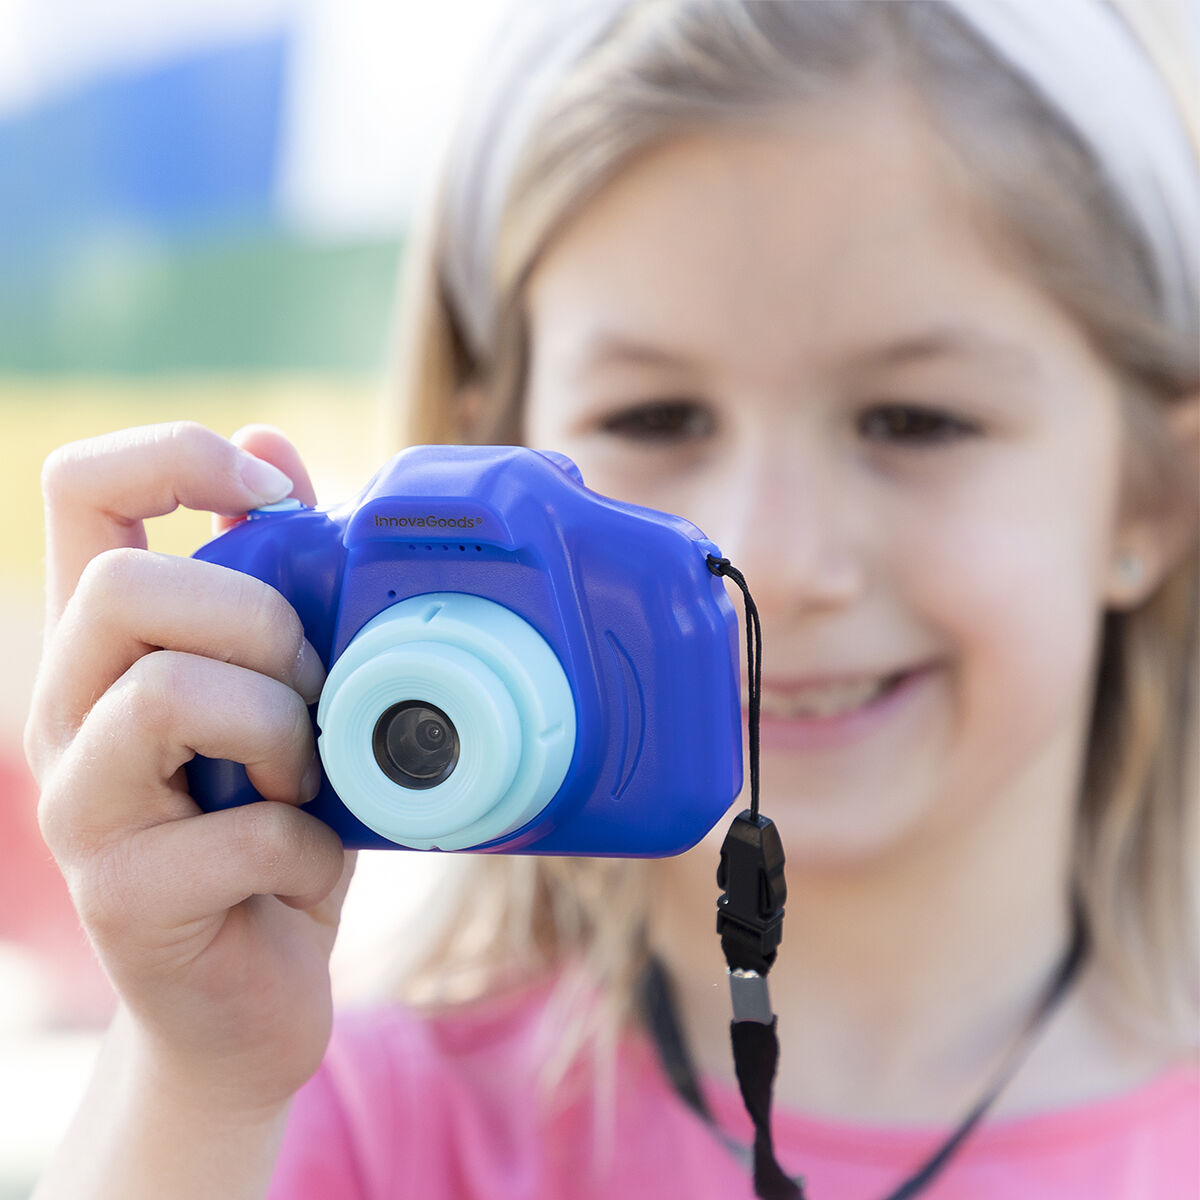 Digitalkamera für Kinder